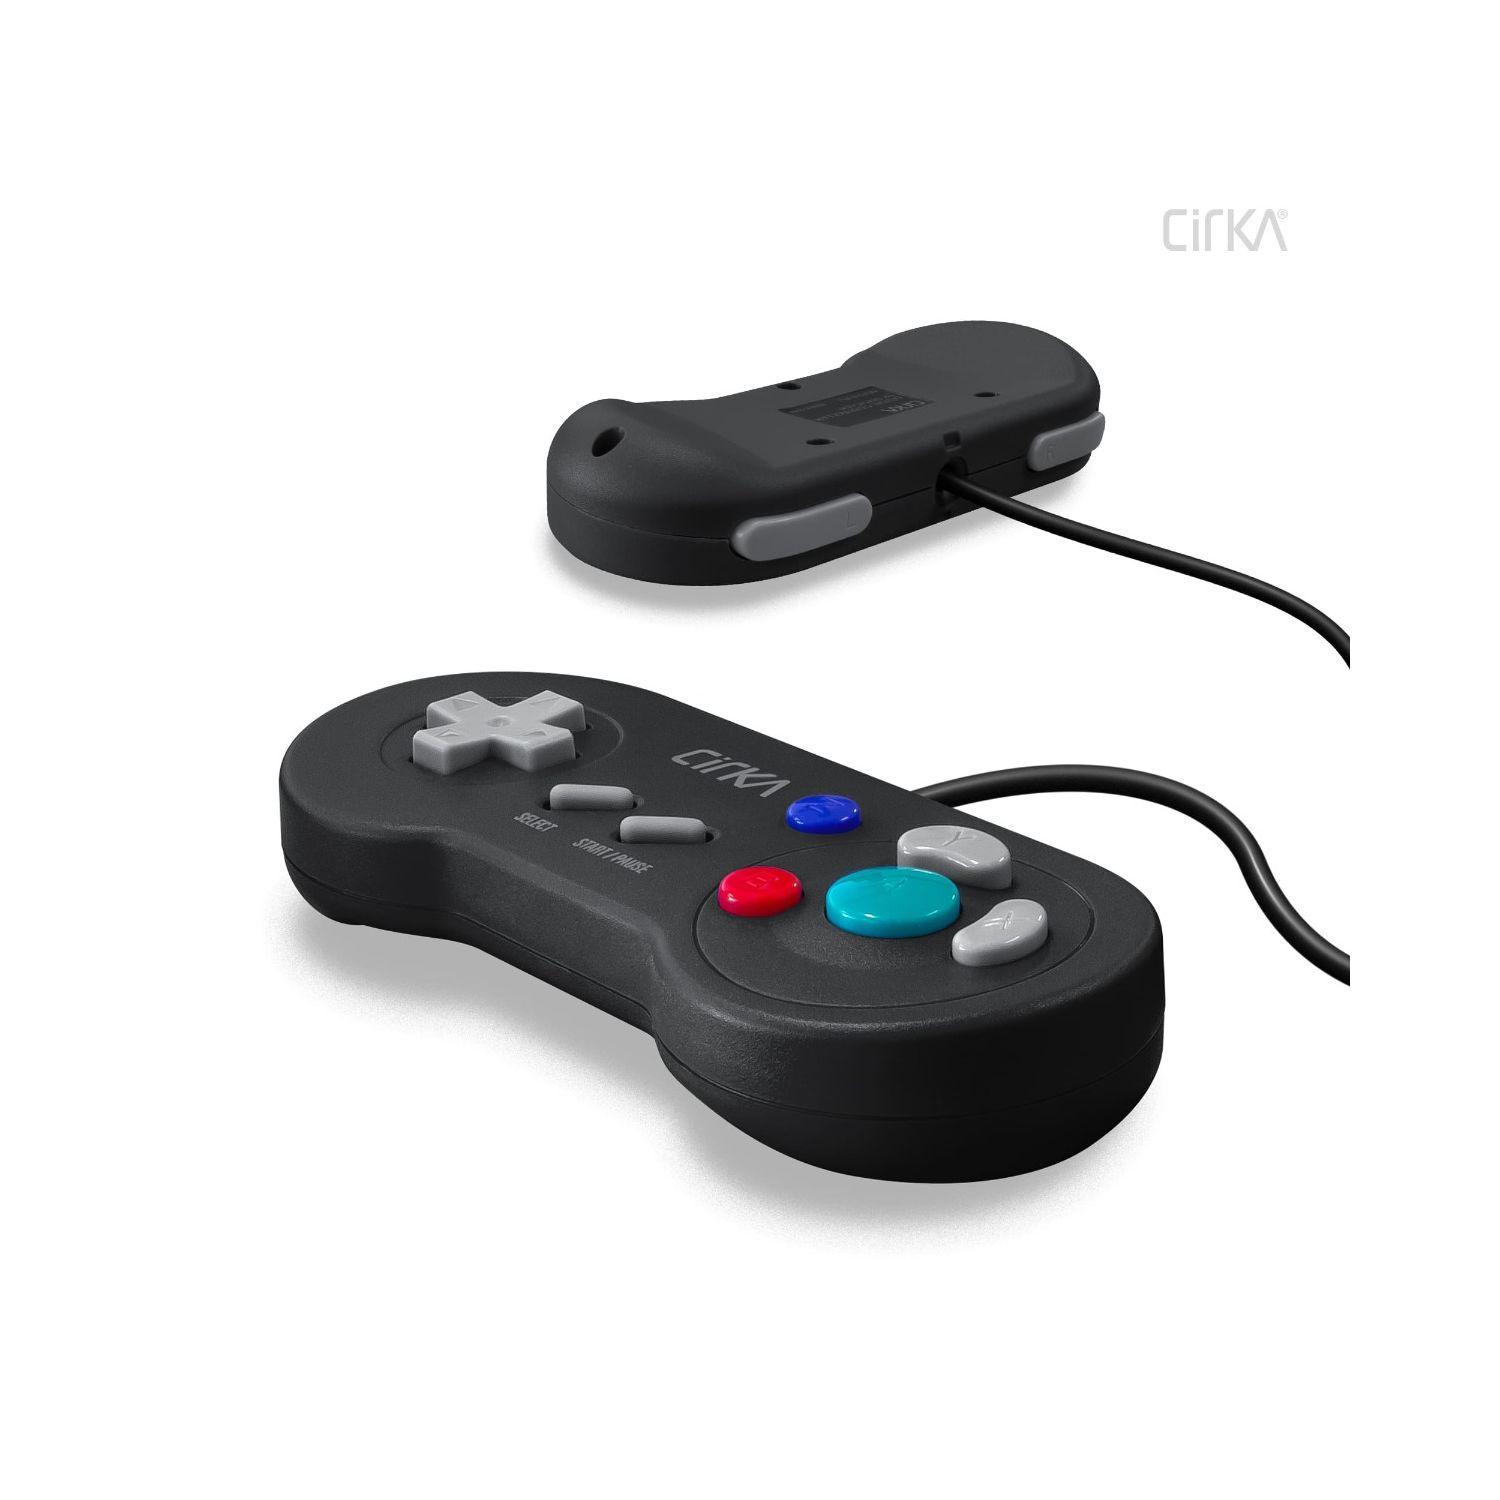 Digital Kontroller til Nintendo GameCube - CirKa - RetroGaming.no